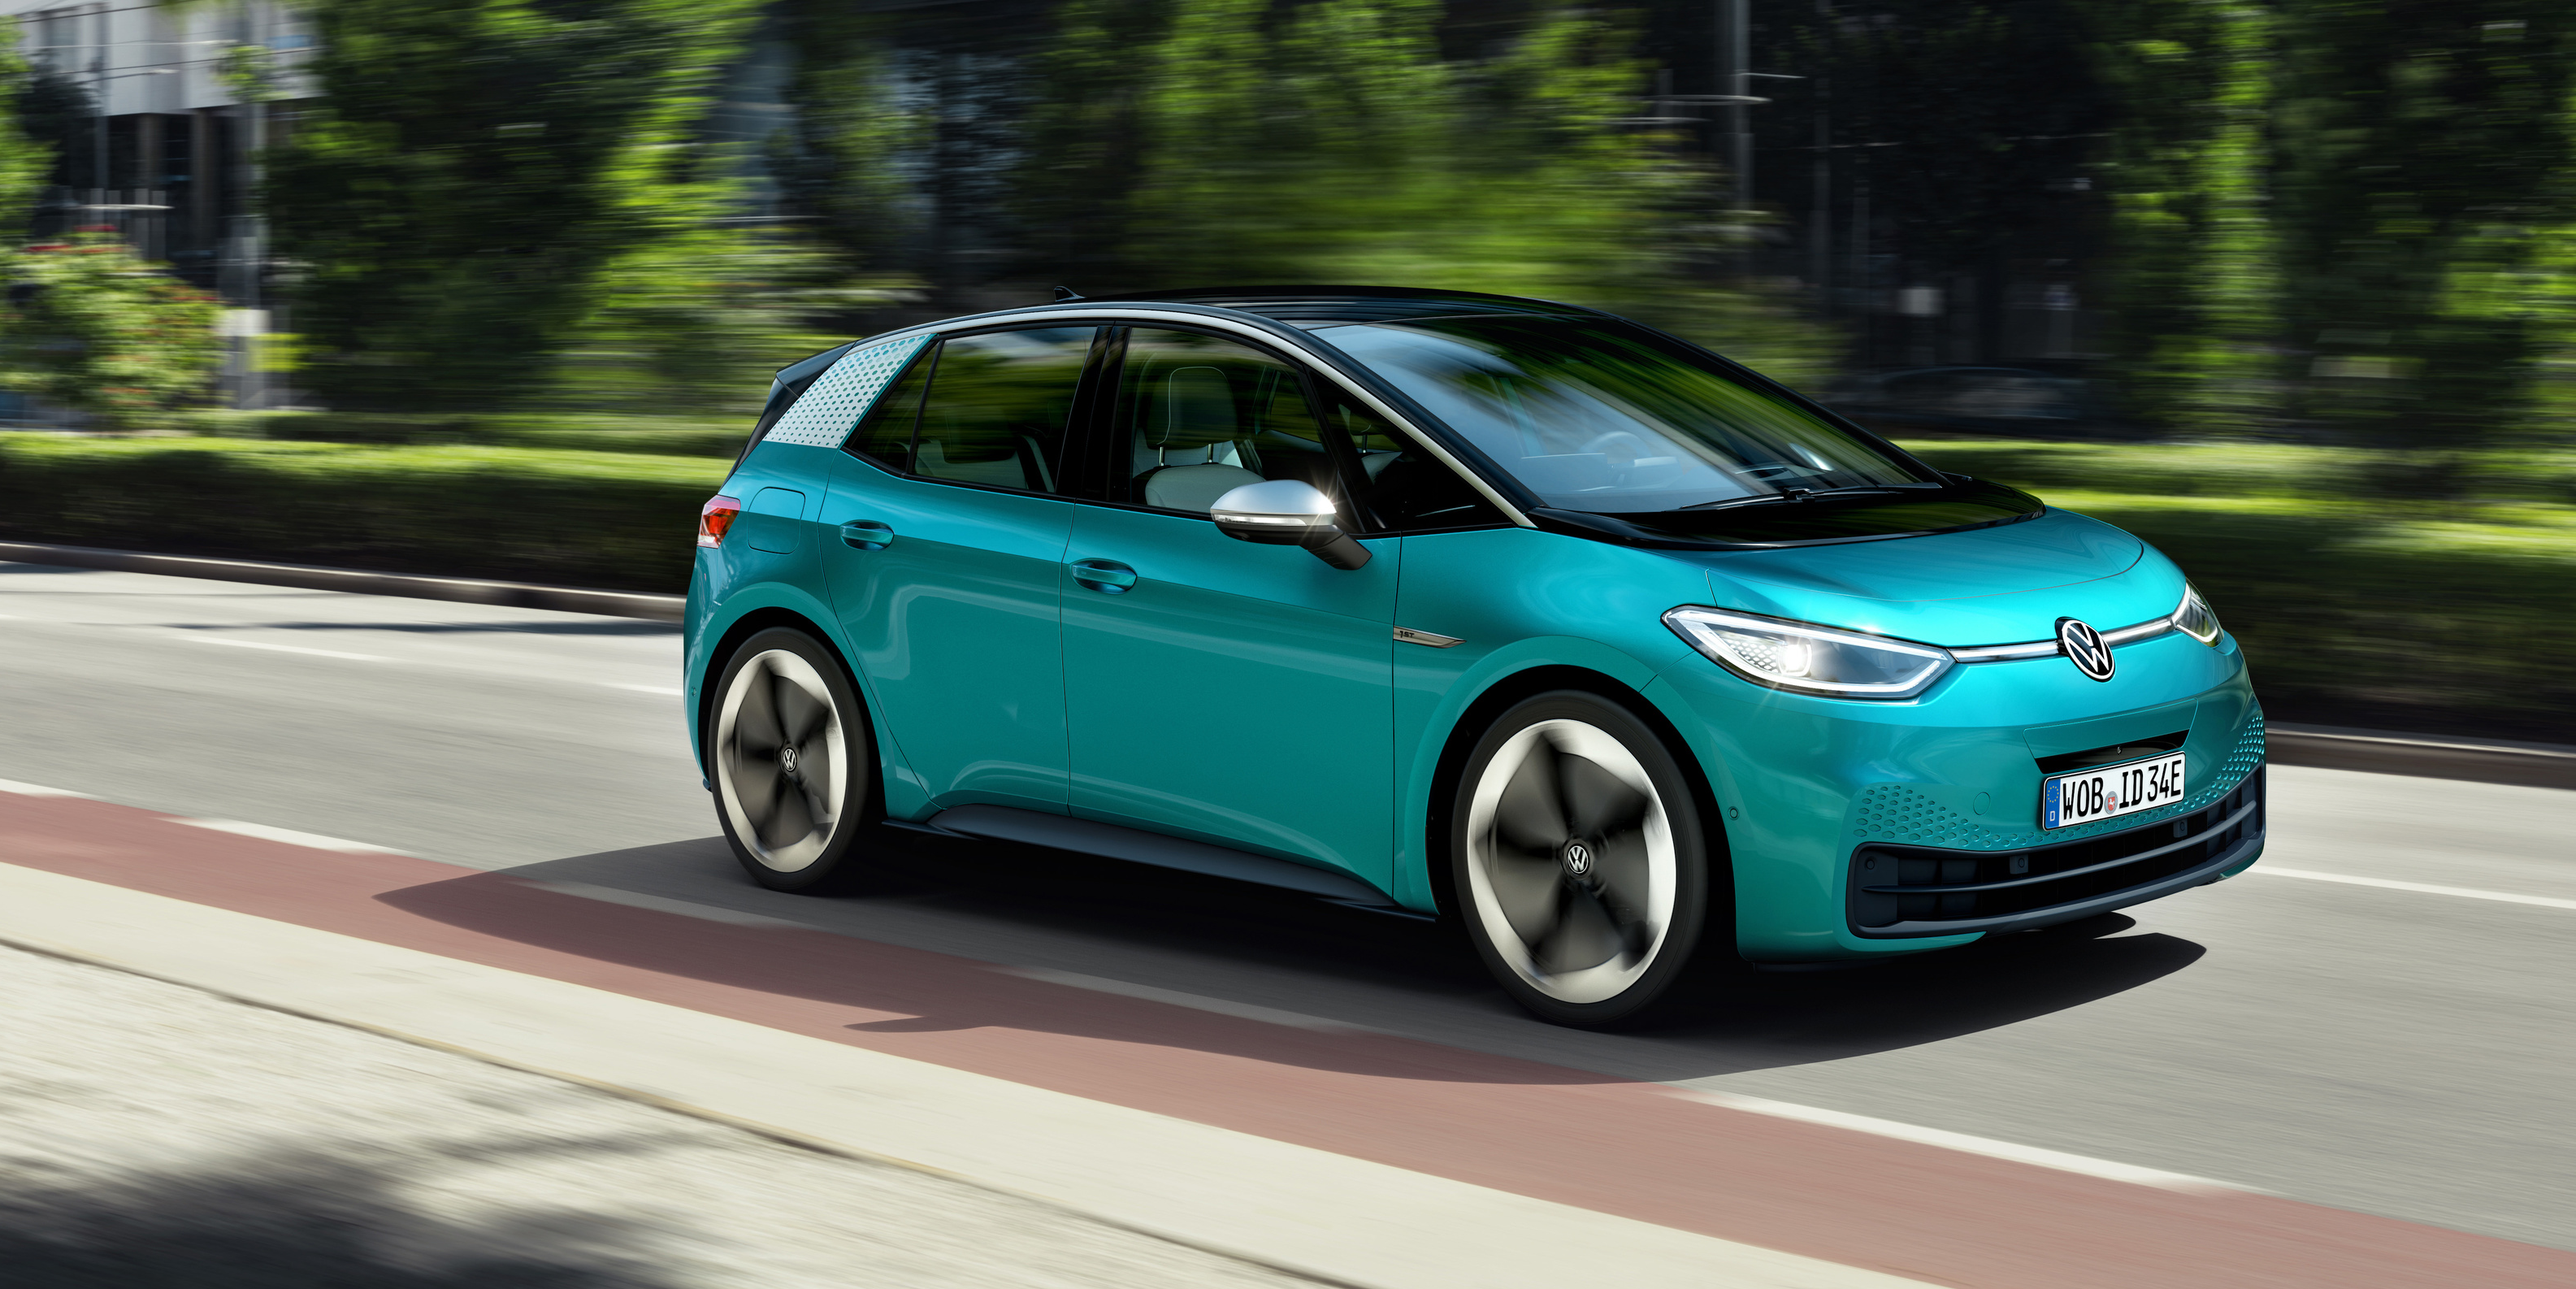 Volkswagen fait mieux que Tesla en proposant une voiture électrique bien  moins chère